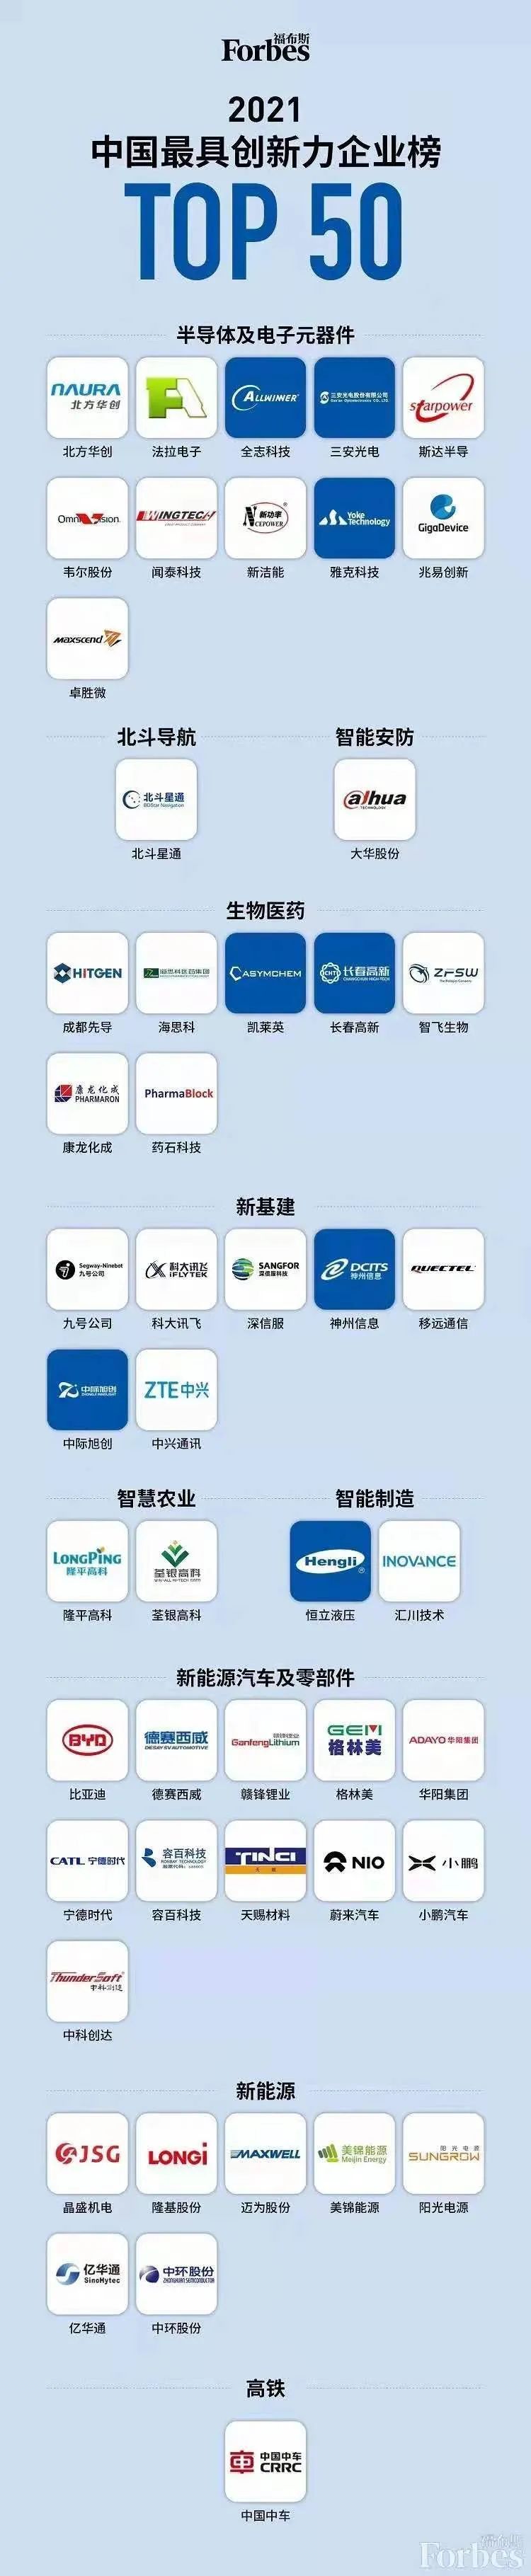 华阳集团荣登“福布斯中国最具创新力企业榜”50强